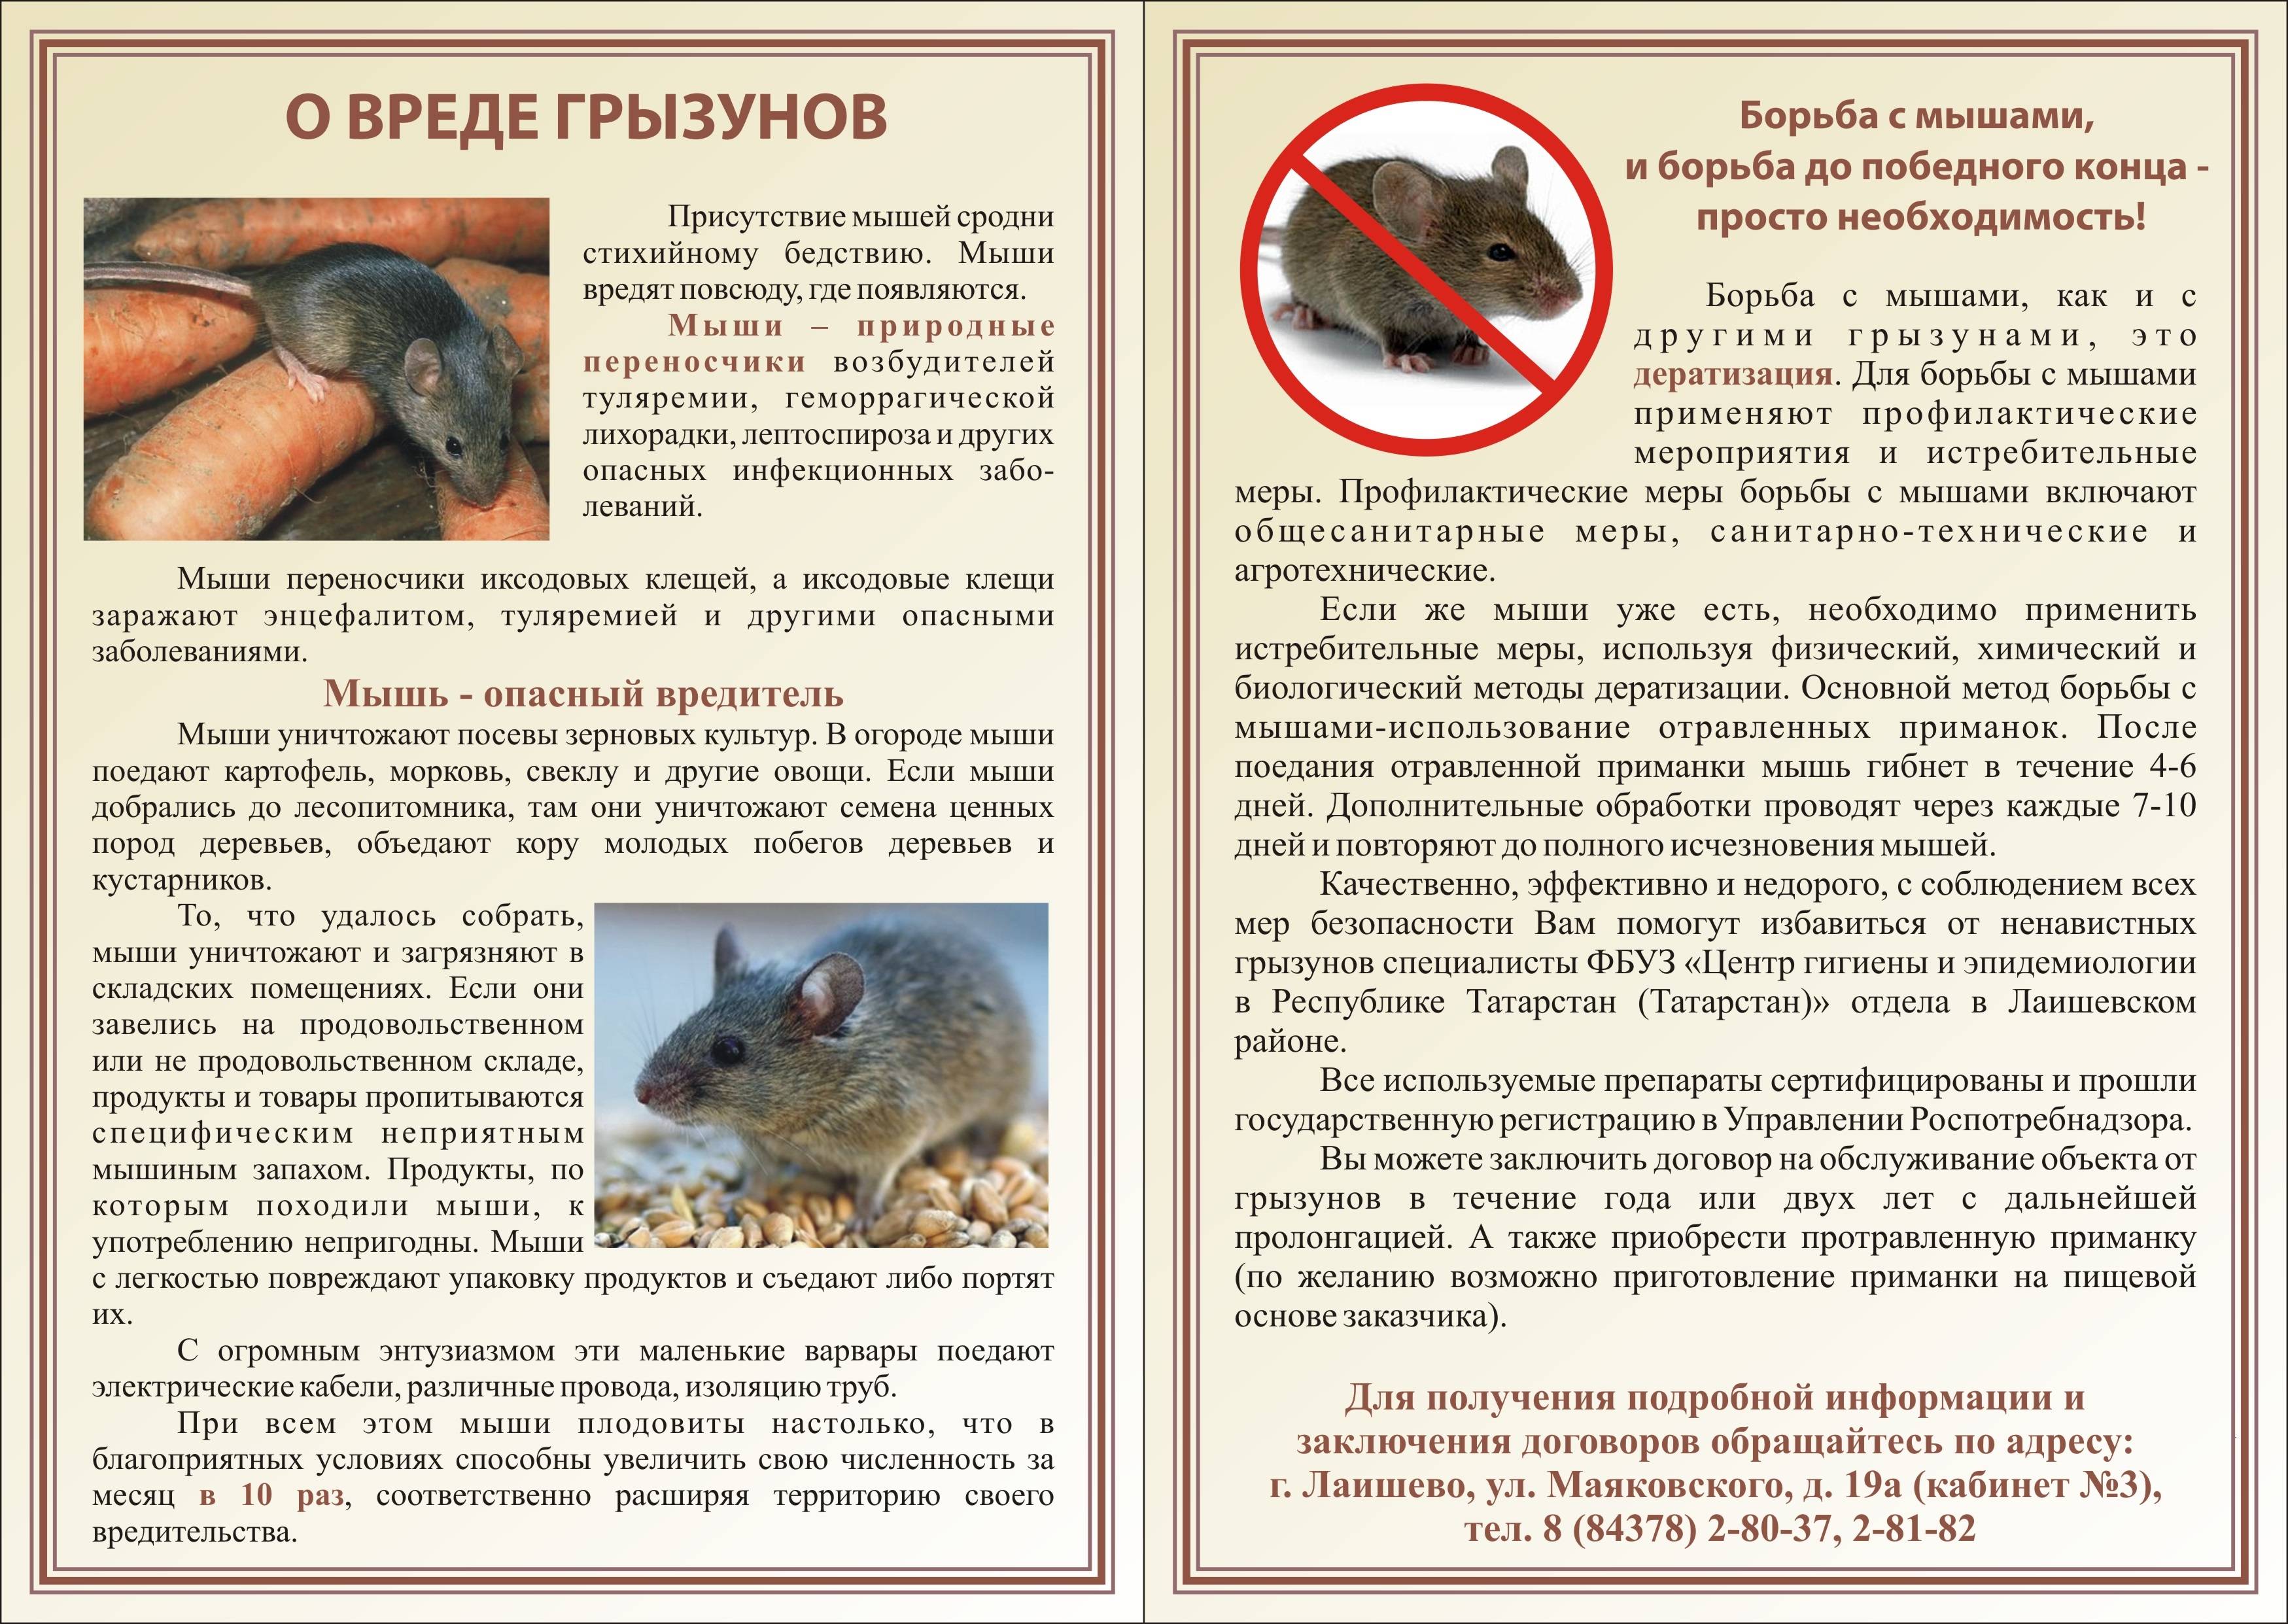 Какие болезни переносят крысы, какие инфекции может подхватить человек?